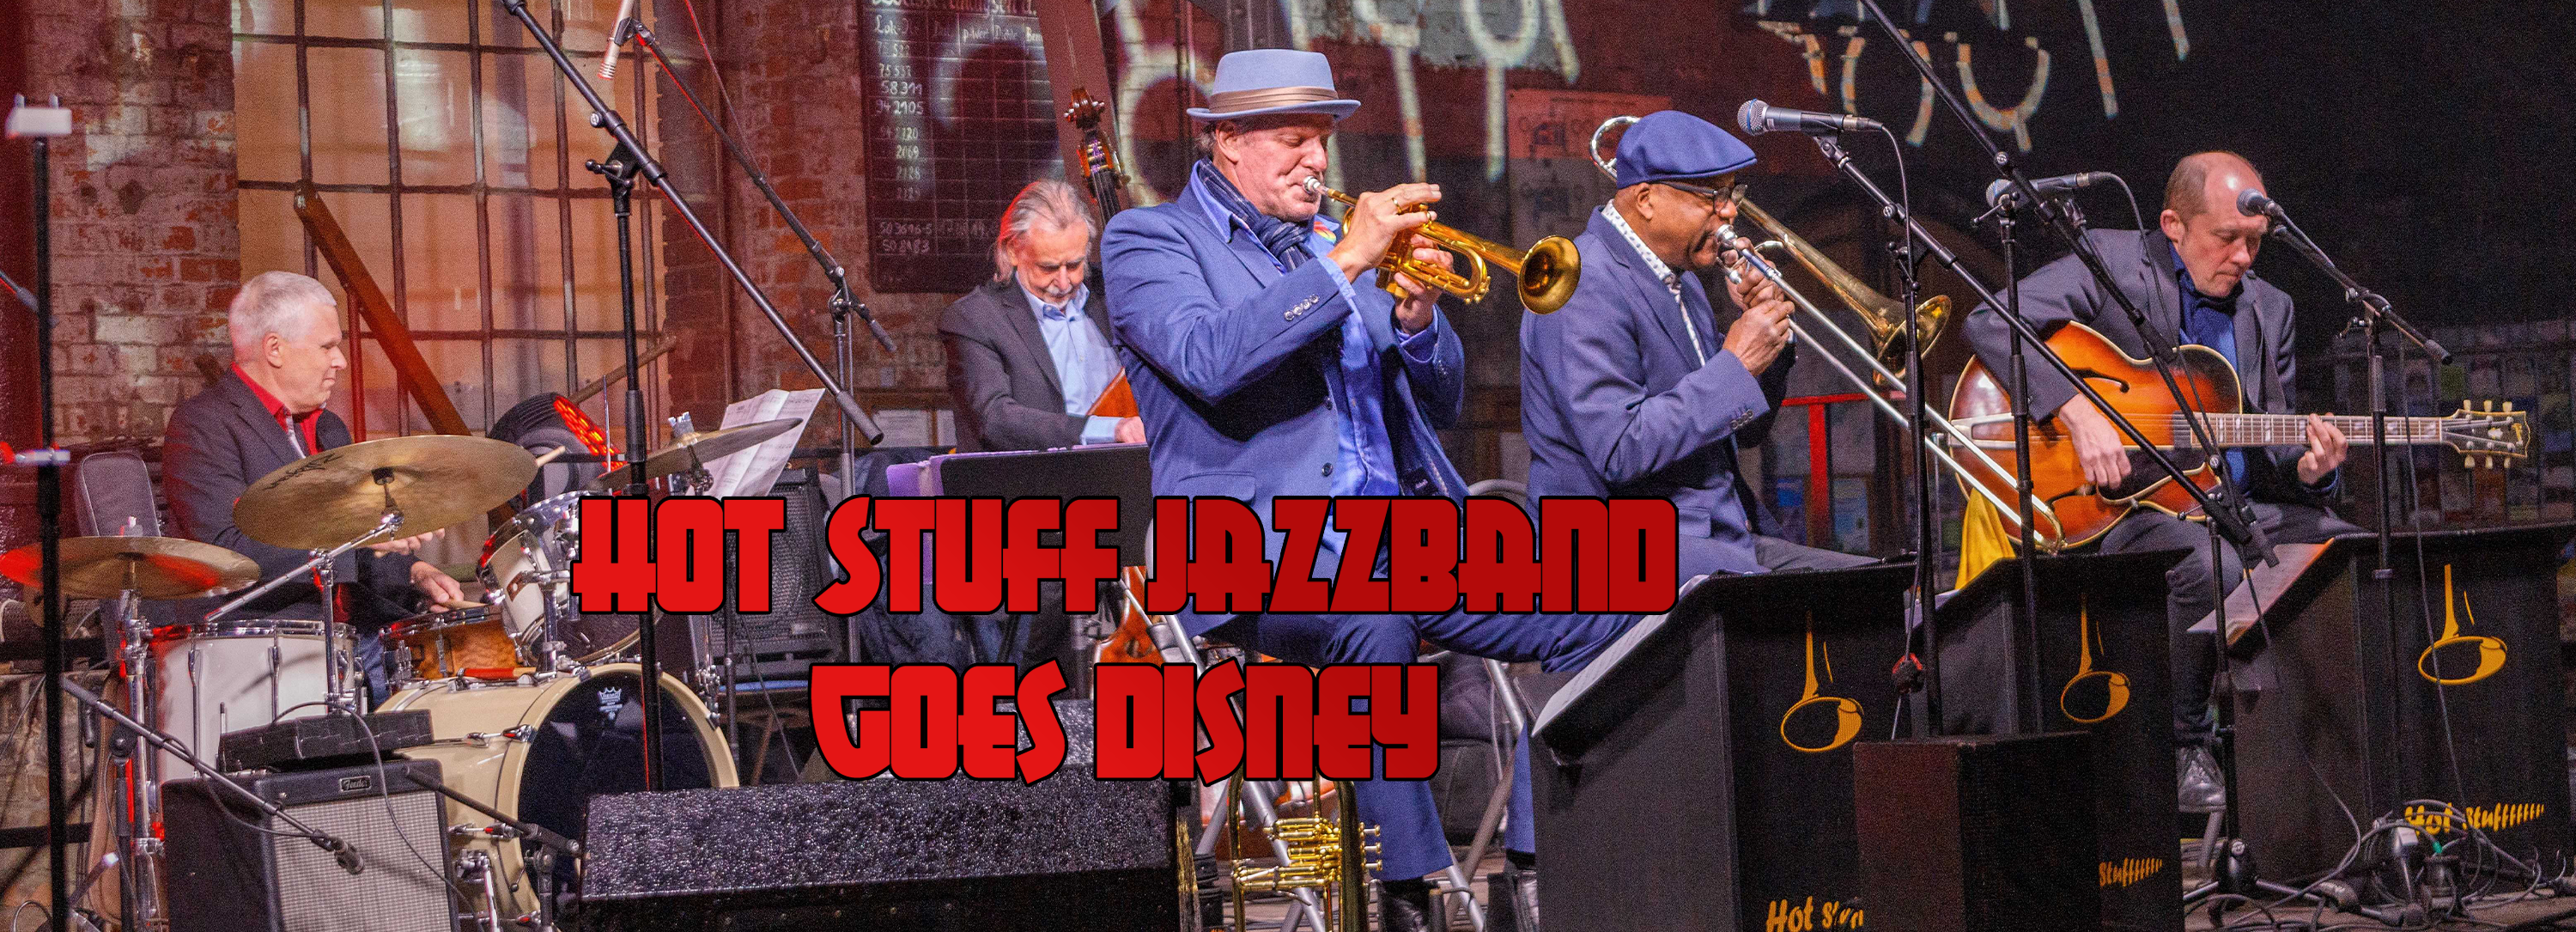 Hot Stuff Jazzband goes Disney im Silbersaal im Deutschen Theater München